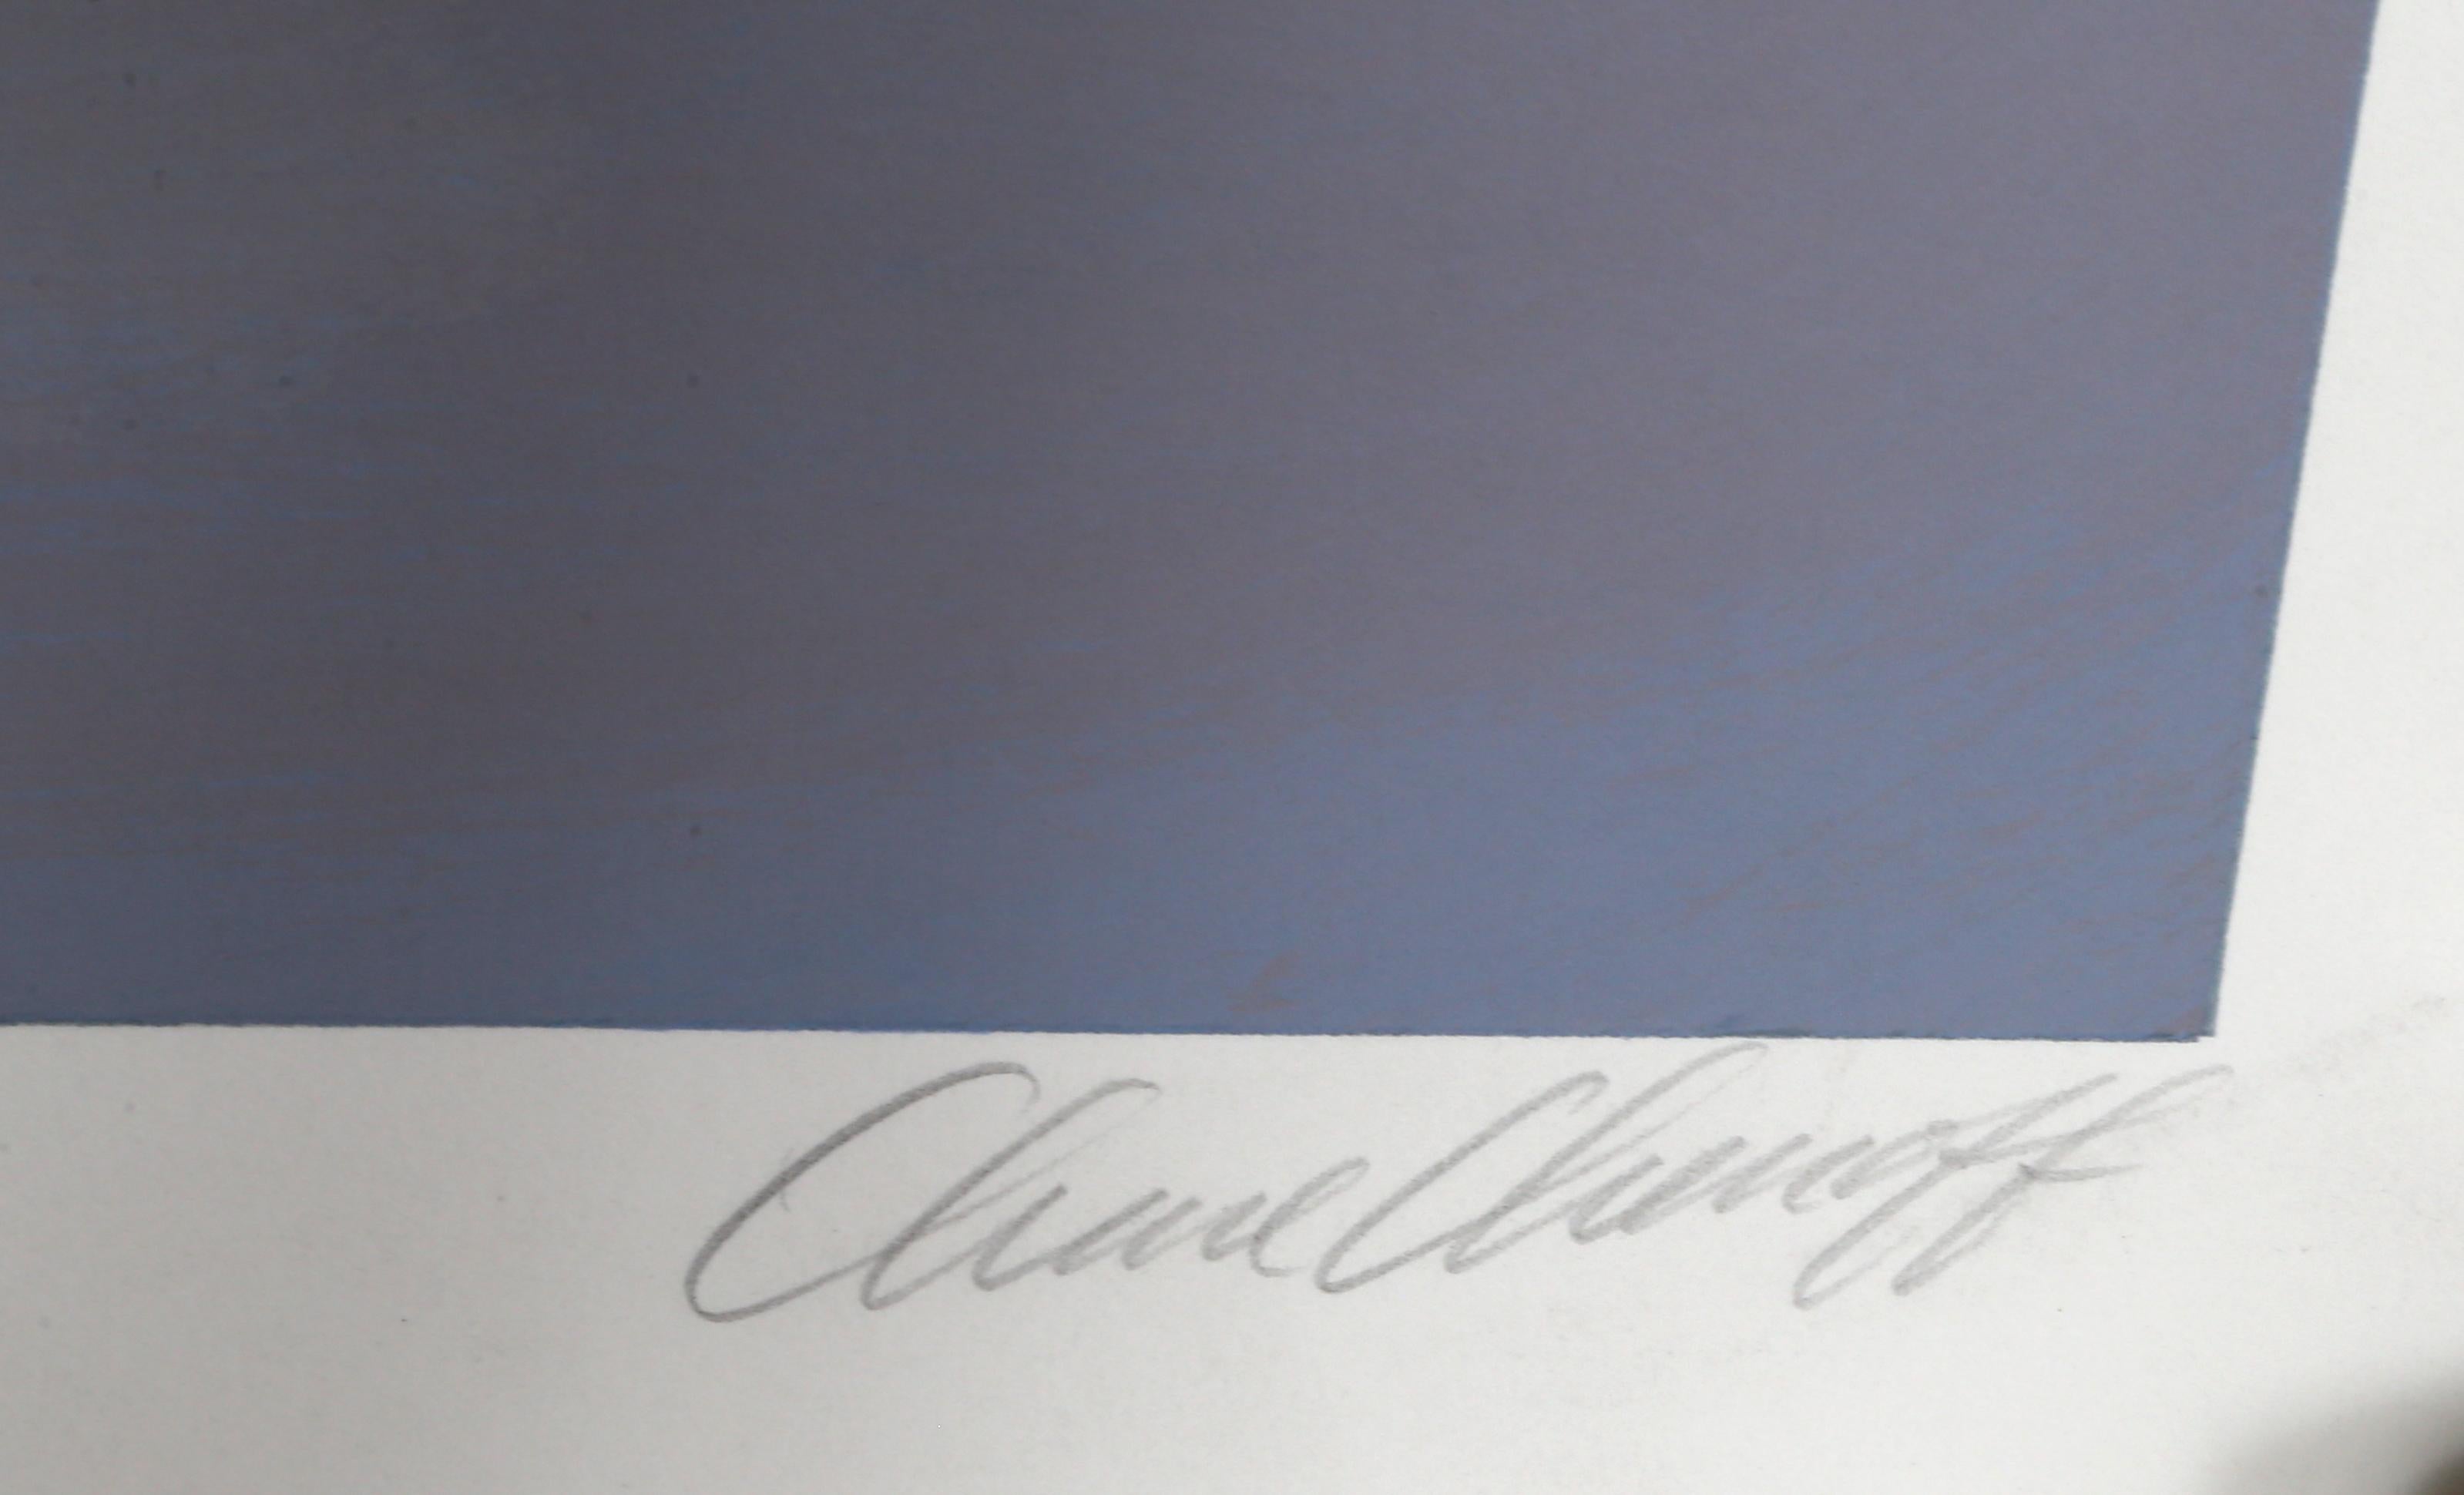 Lost Shadow de Chase Chen Chenoff, chinois/américain (1964)
Date : vers 1990
Sérigraphie, signée et numérotée au crayon.
Édition de l'EA 55
Dimensions : 95,25 cm x 114,3 cm (37,5 in. x 45 in.)